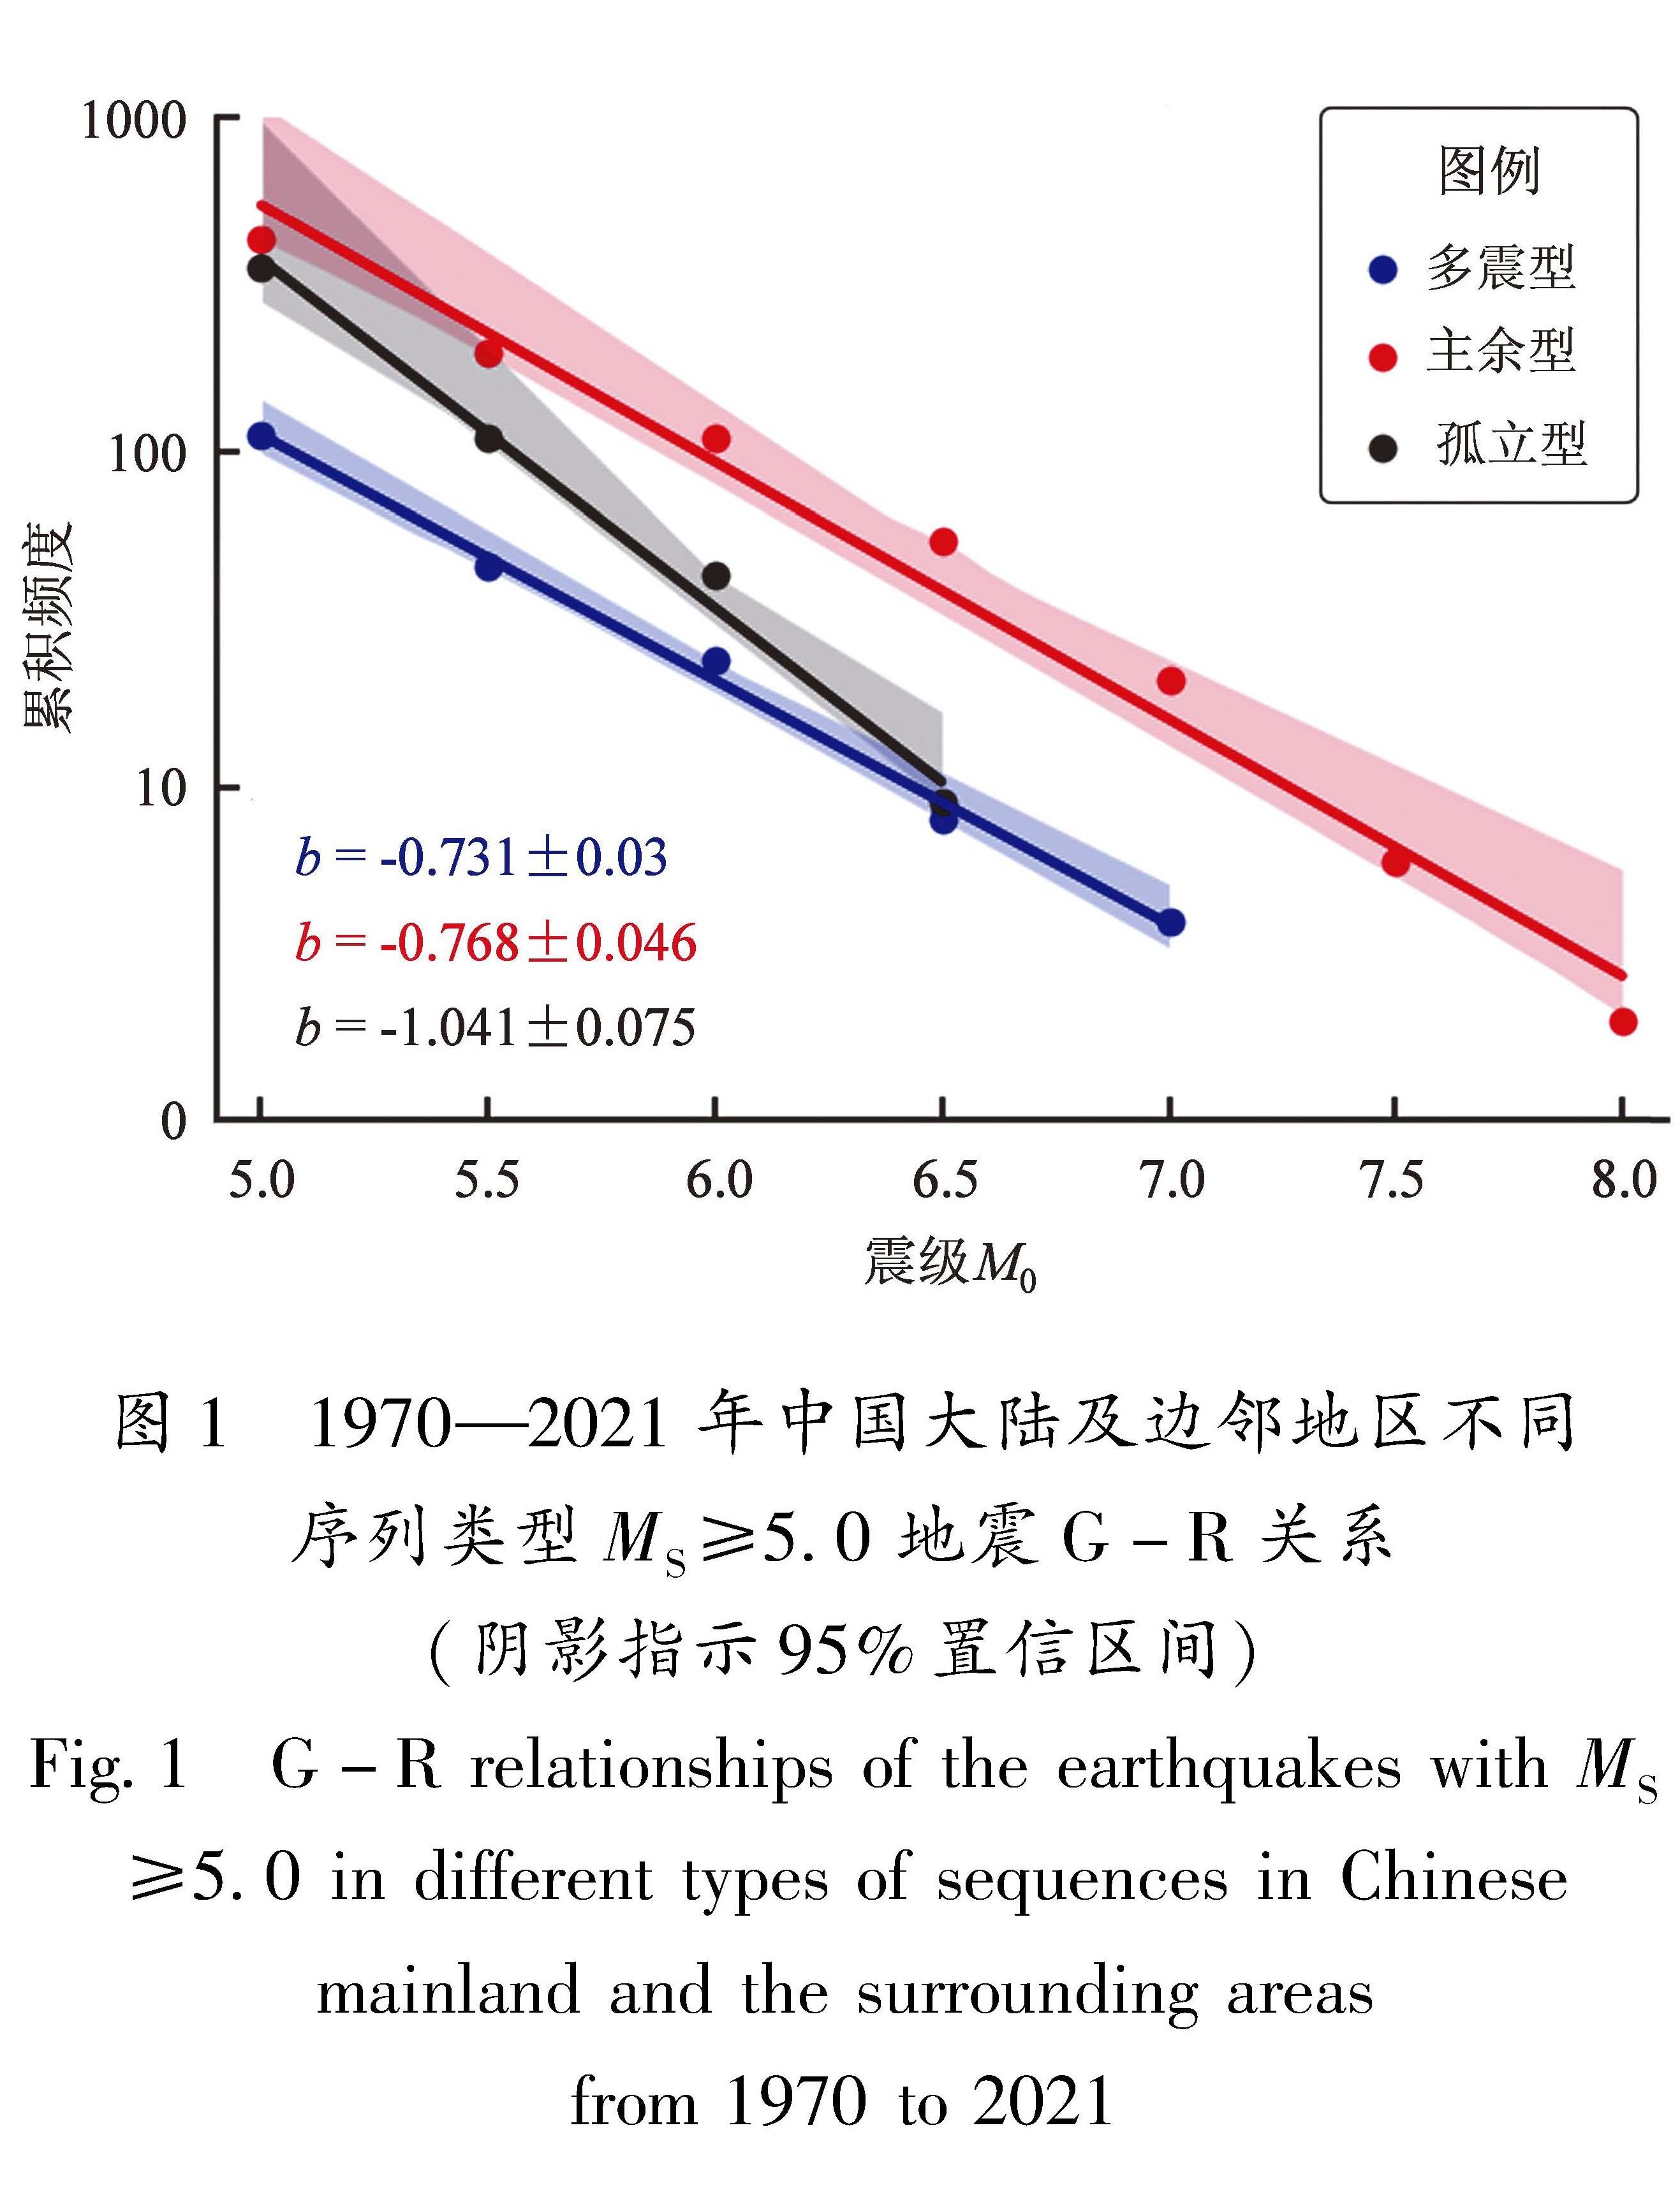 图1 1970—2021年中国大陆及边邻地区不同序列类型MS≥5.0地震G-R关系(阴影指示95%置信区间)<br/>Fig.1 G-R relationships of the earthquakes with MS≥5.0 in different types of sequences in Chinese mainland and the surrounding areas from 1970 to 2021